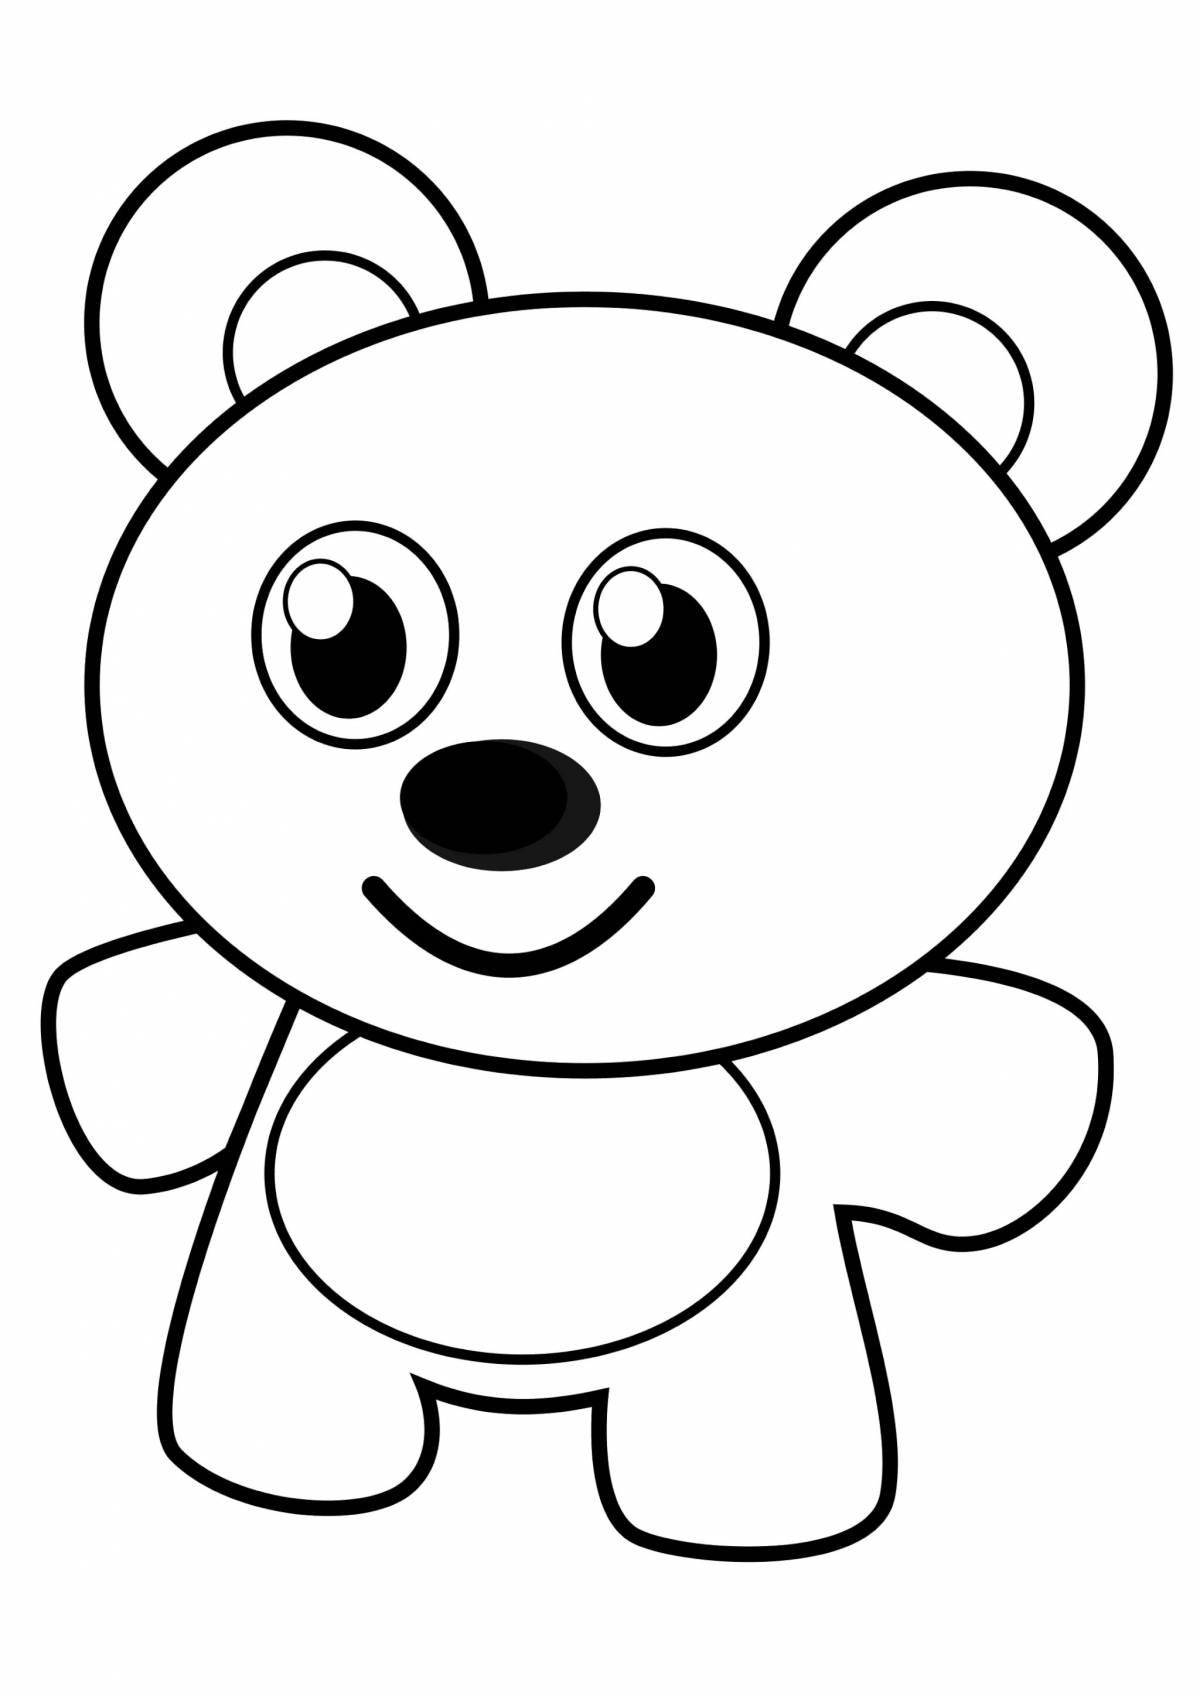 Adorable bear coloring book